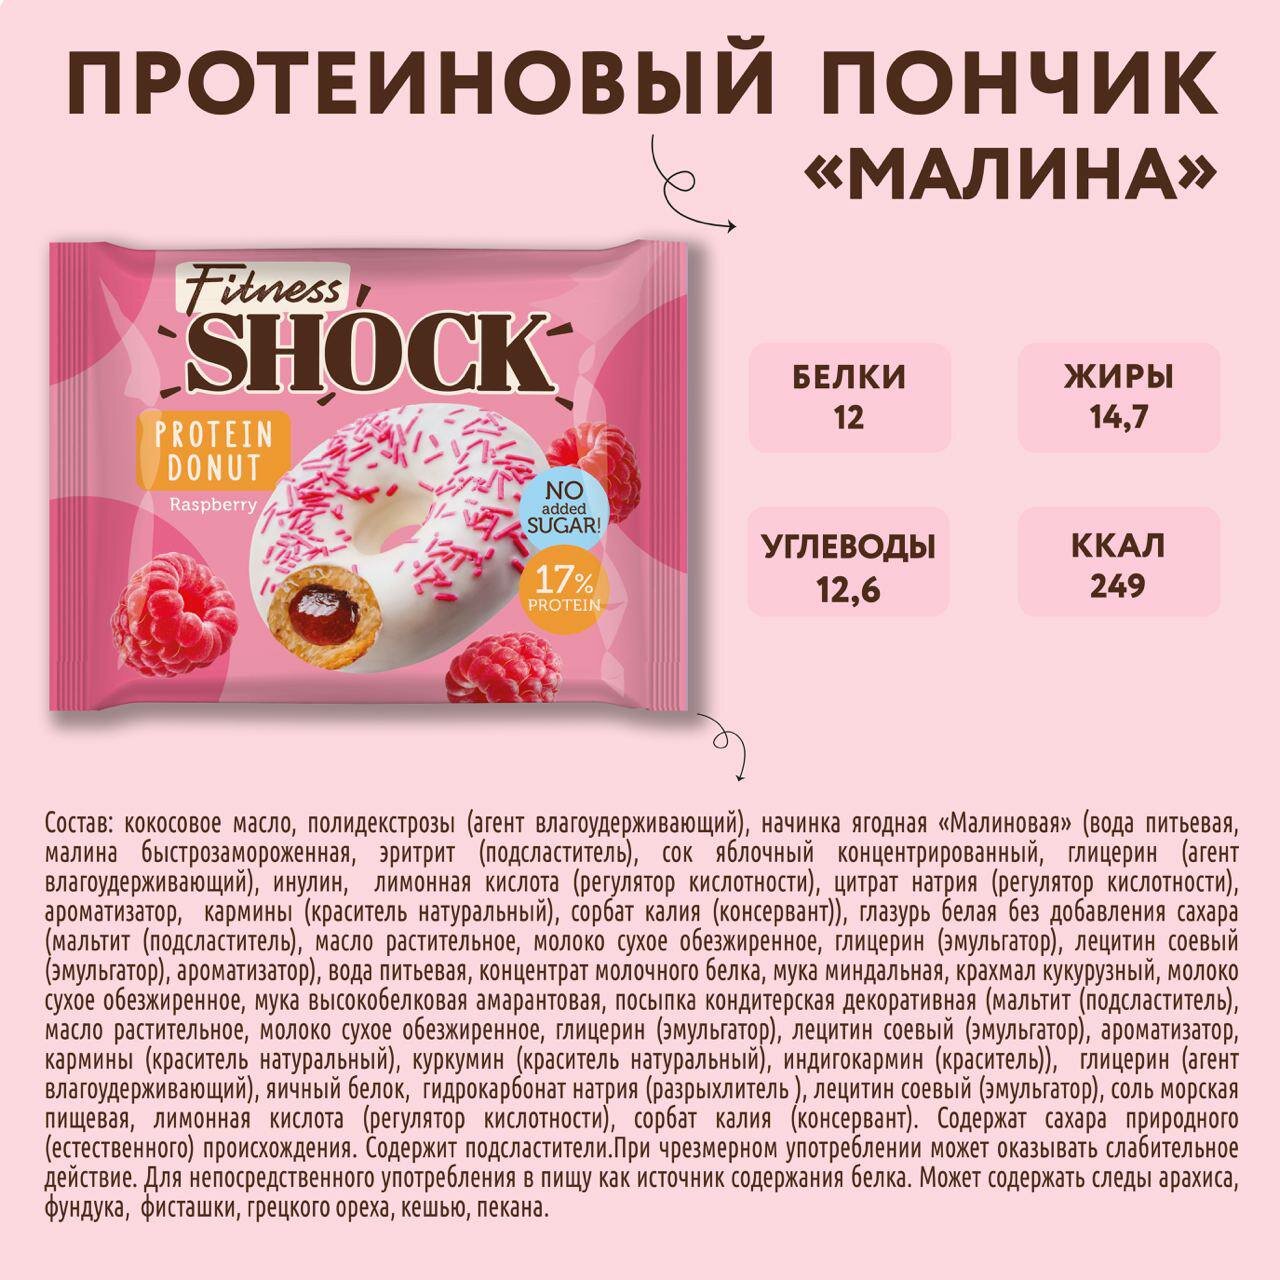 Протеиновые пончики без сахара "Малина" FitnesShock , 9 шт